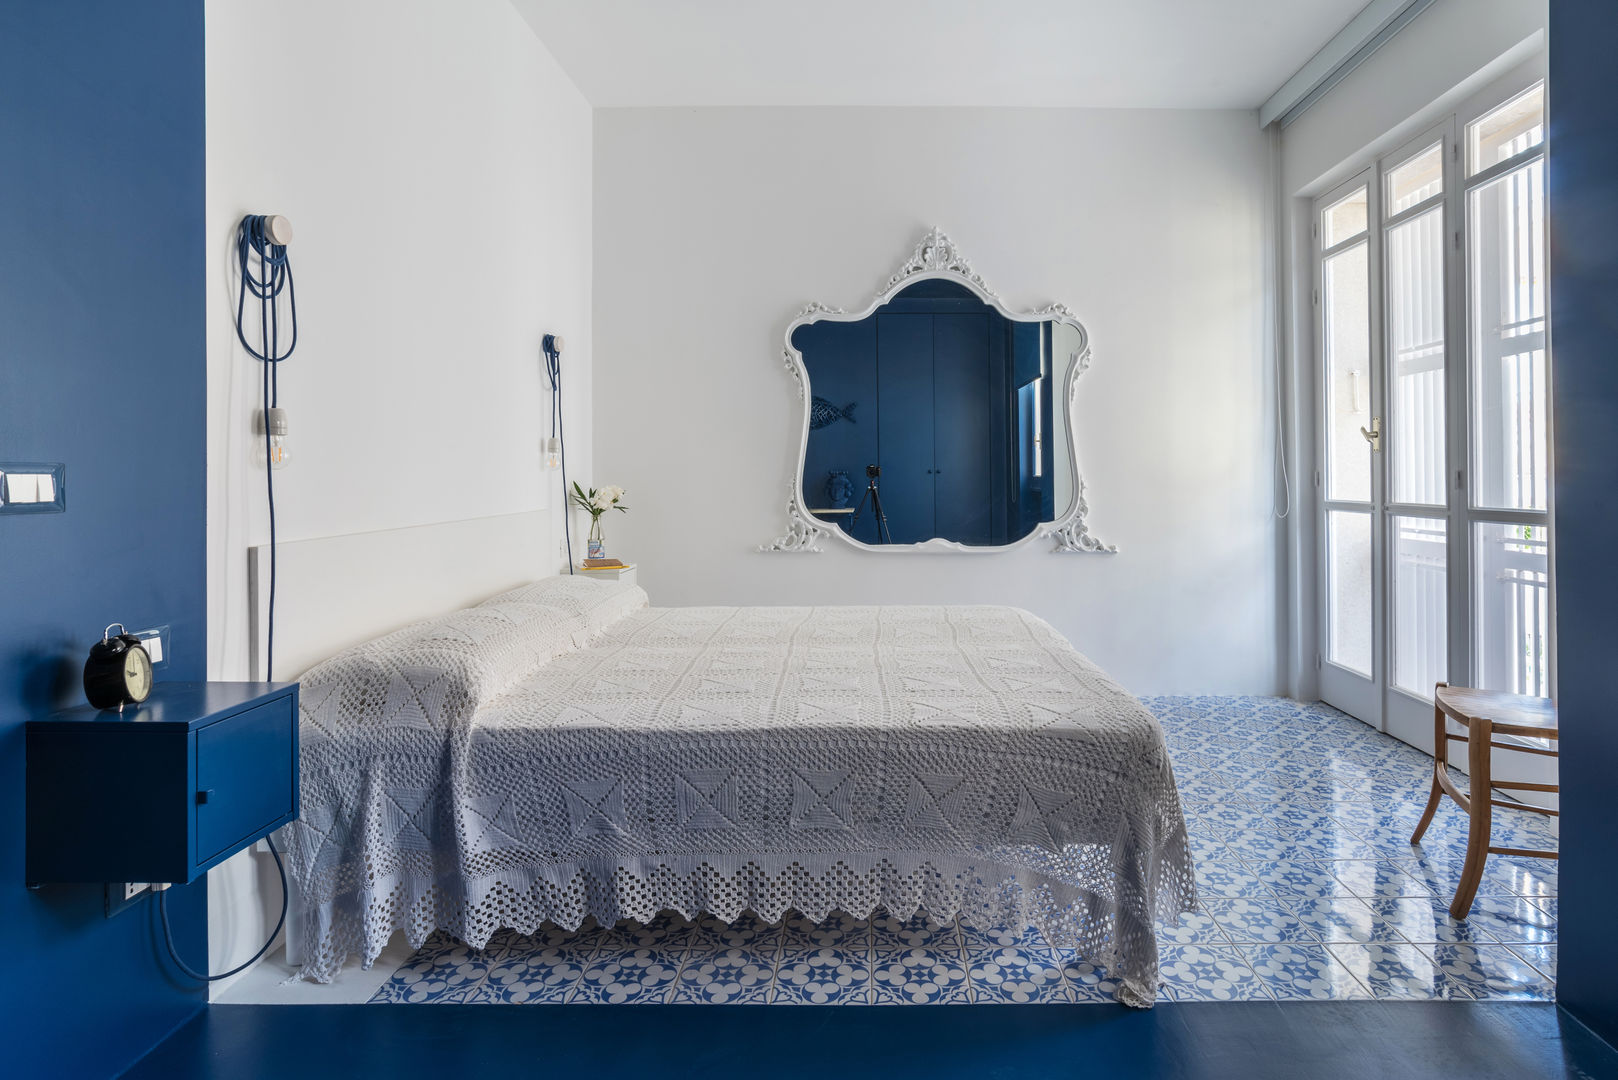 casa IM, Giuseppe Iacono Architetto Giuseppe Iacono Architetto Camera da letto in stile mediterraneo resina,blu,bianco,specchio